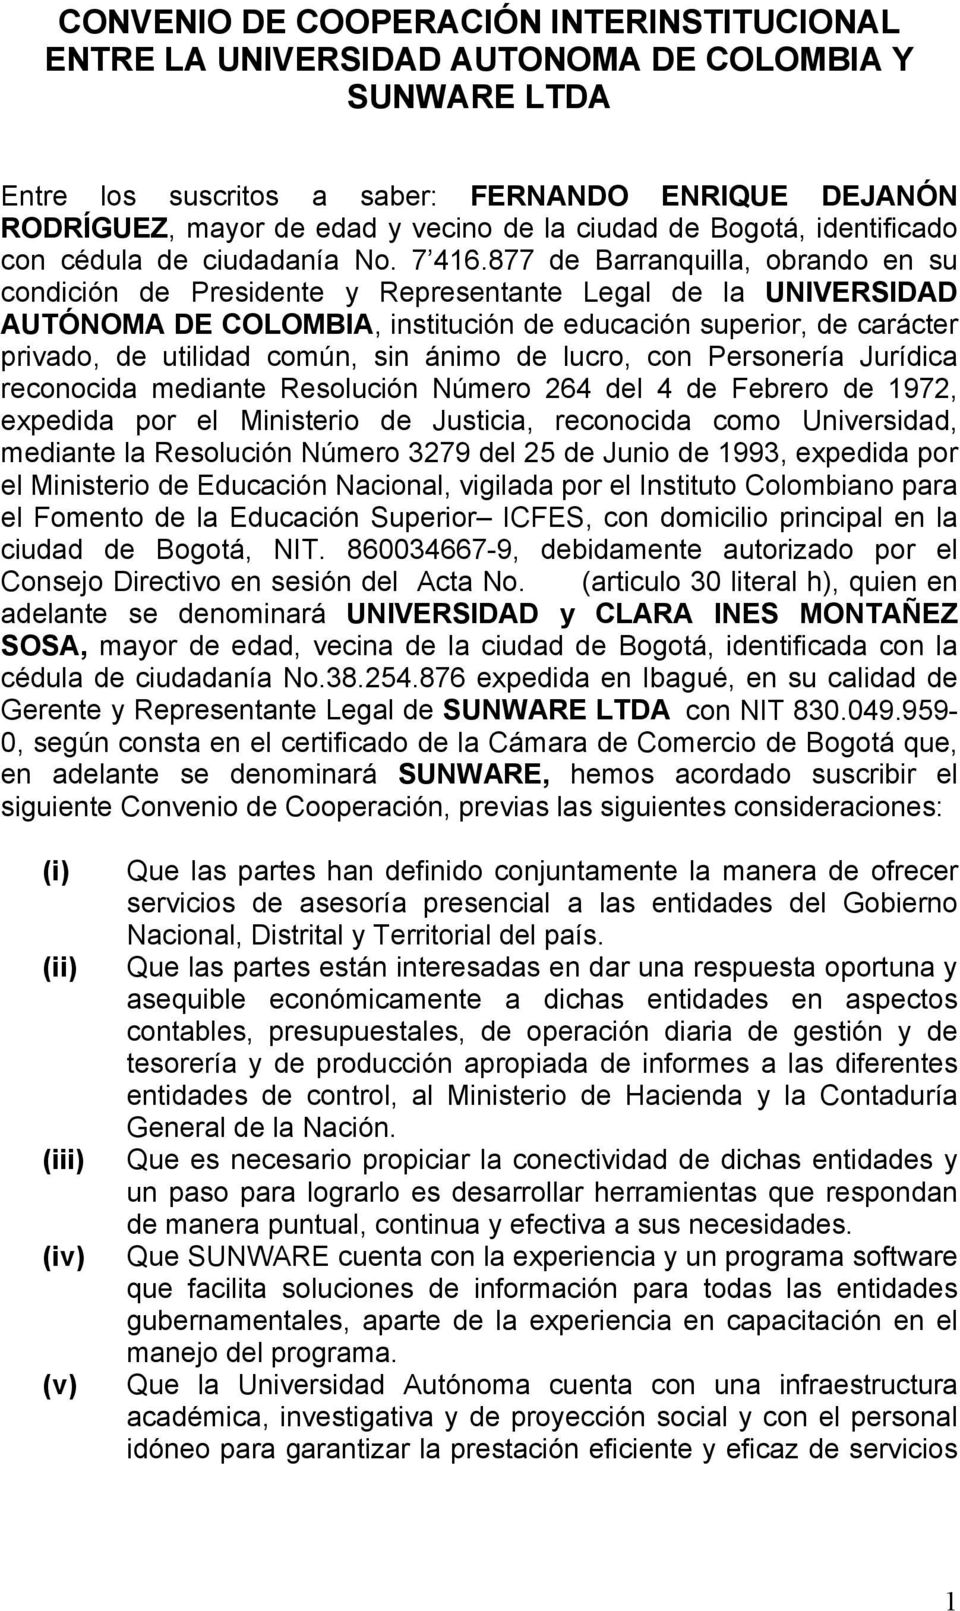 877 de Barranquilla, obrando en su condición de Presidente y Representante Legal de la UNIVERSIDAD AUTÓNOMA DE COLOMBIA, institución de educación superior, de carácter privado, de utilidad común, sin